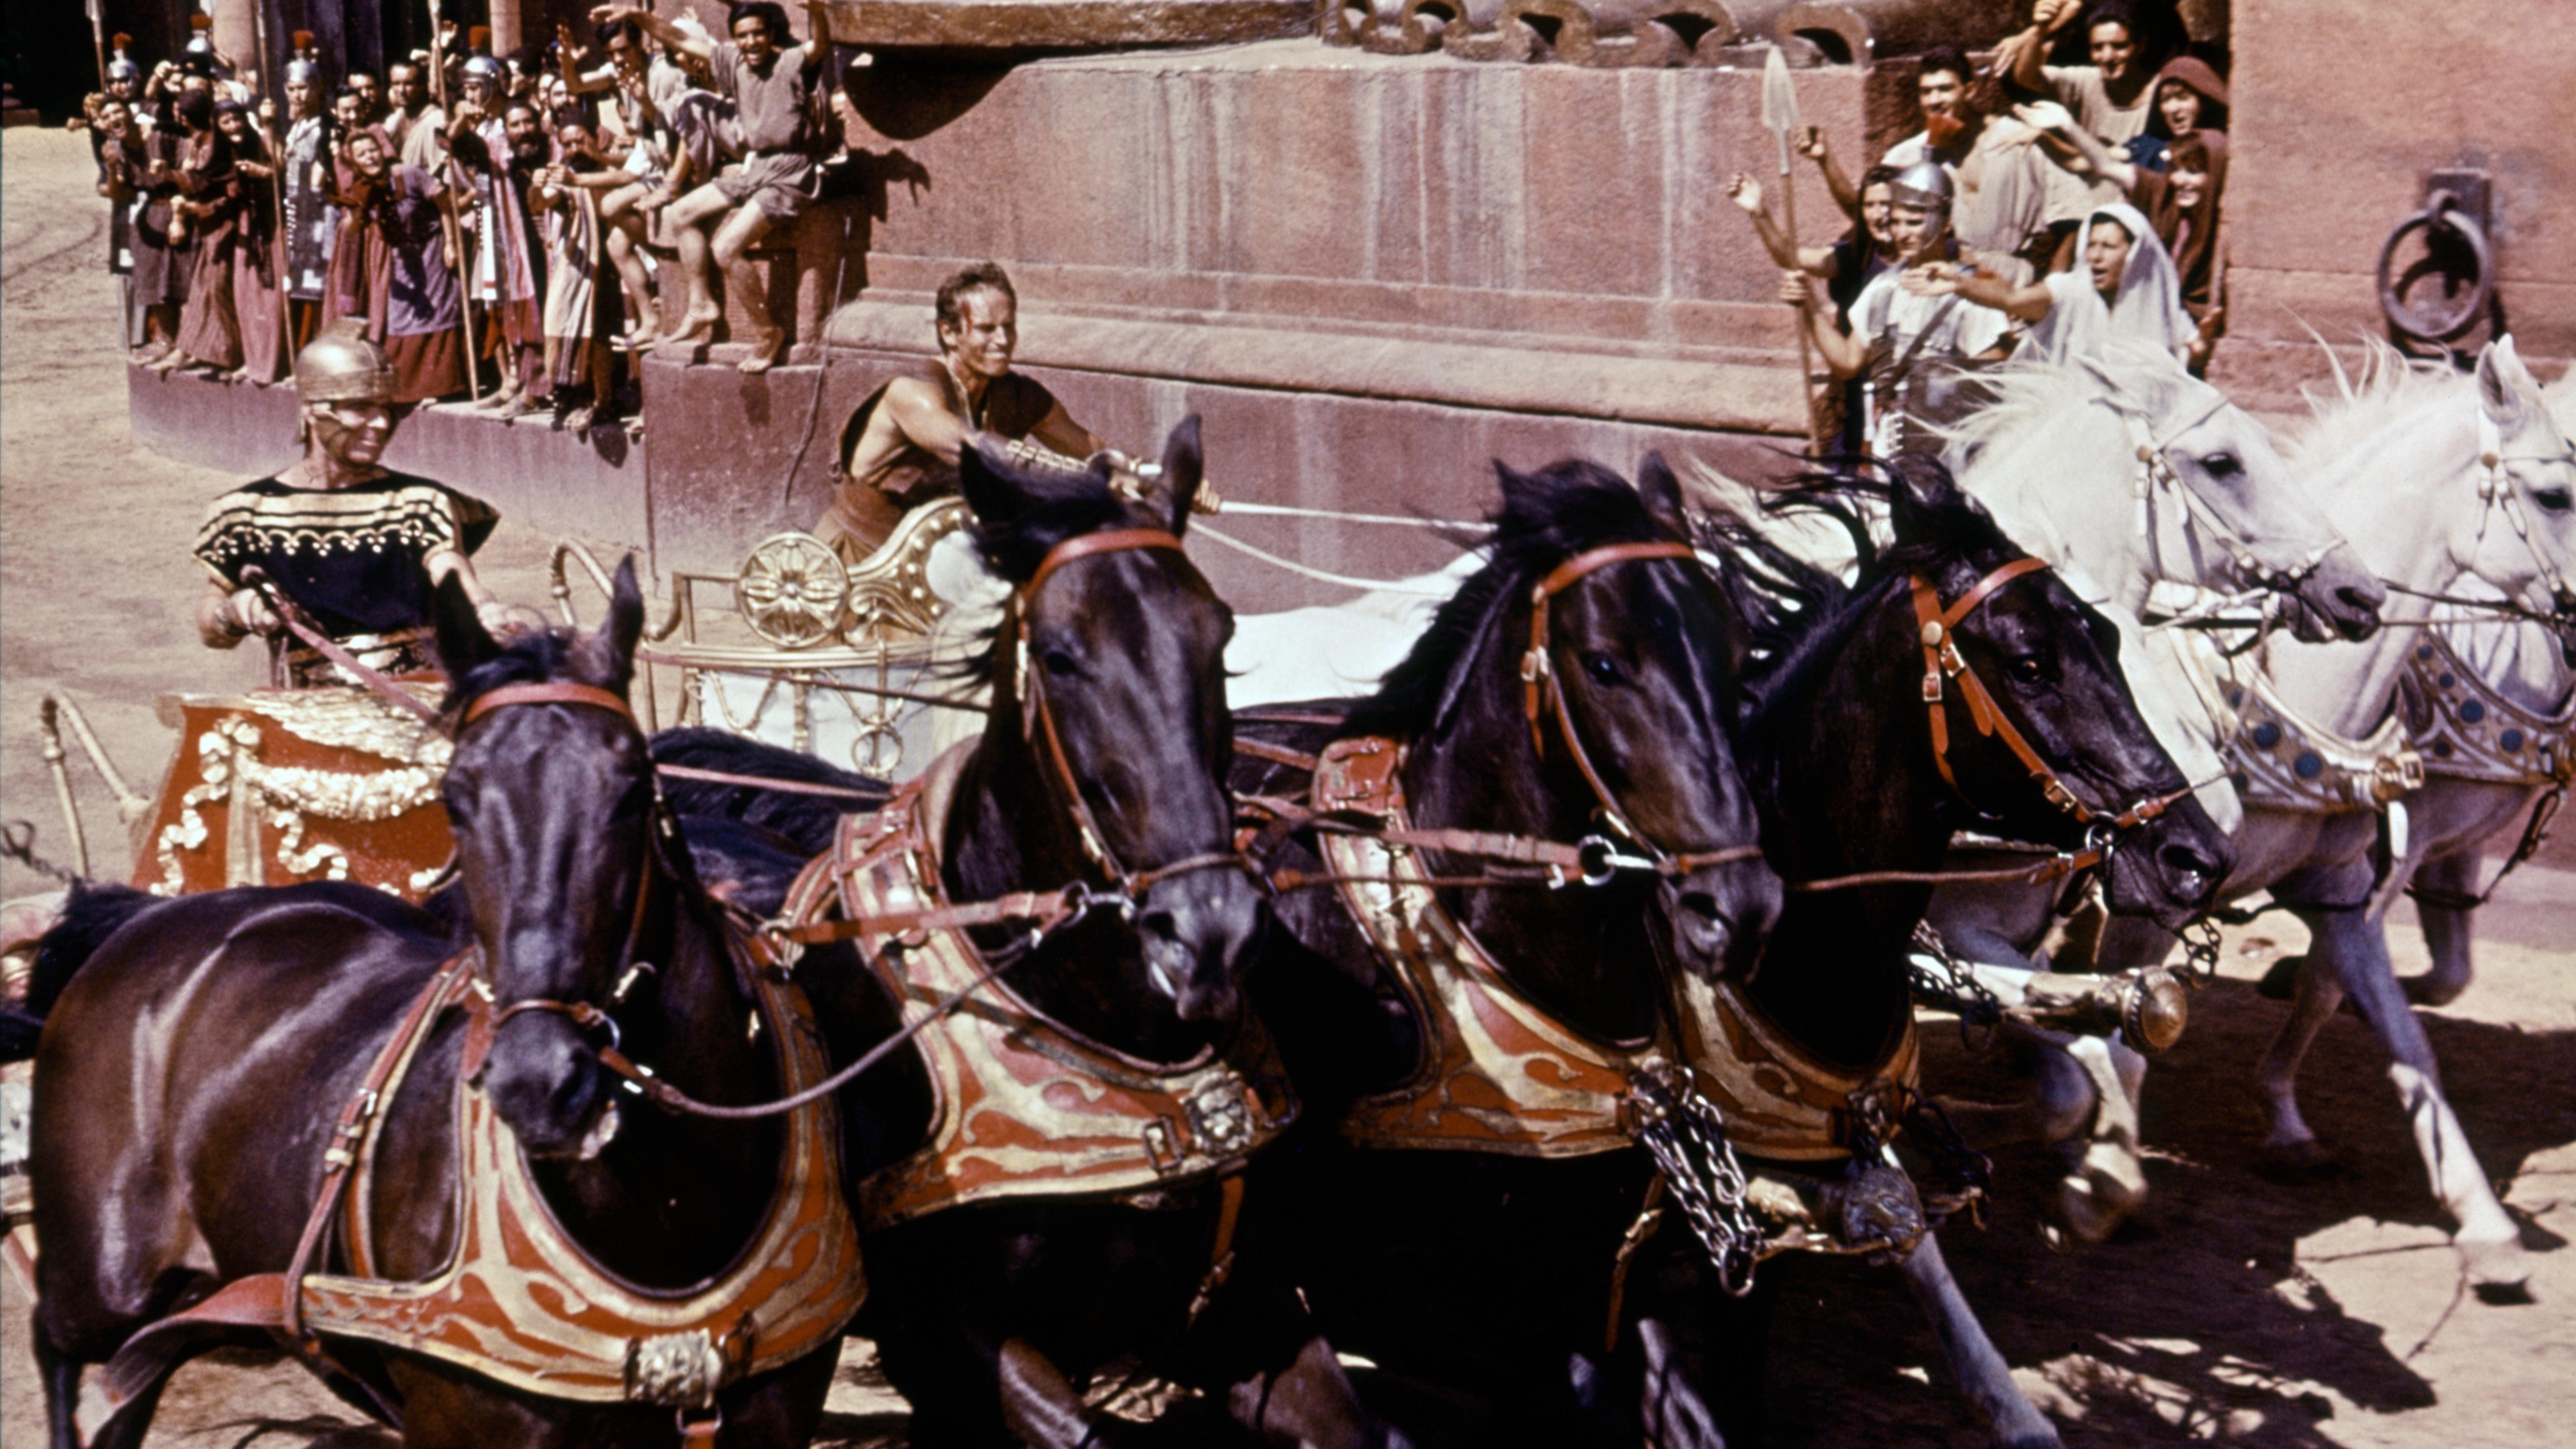 Ben-Hur chariot race